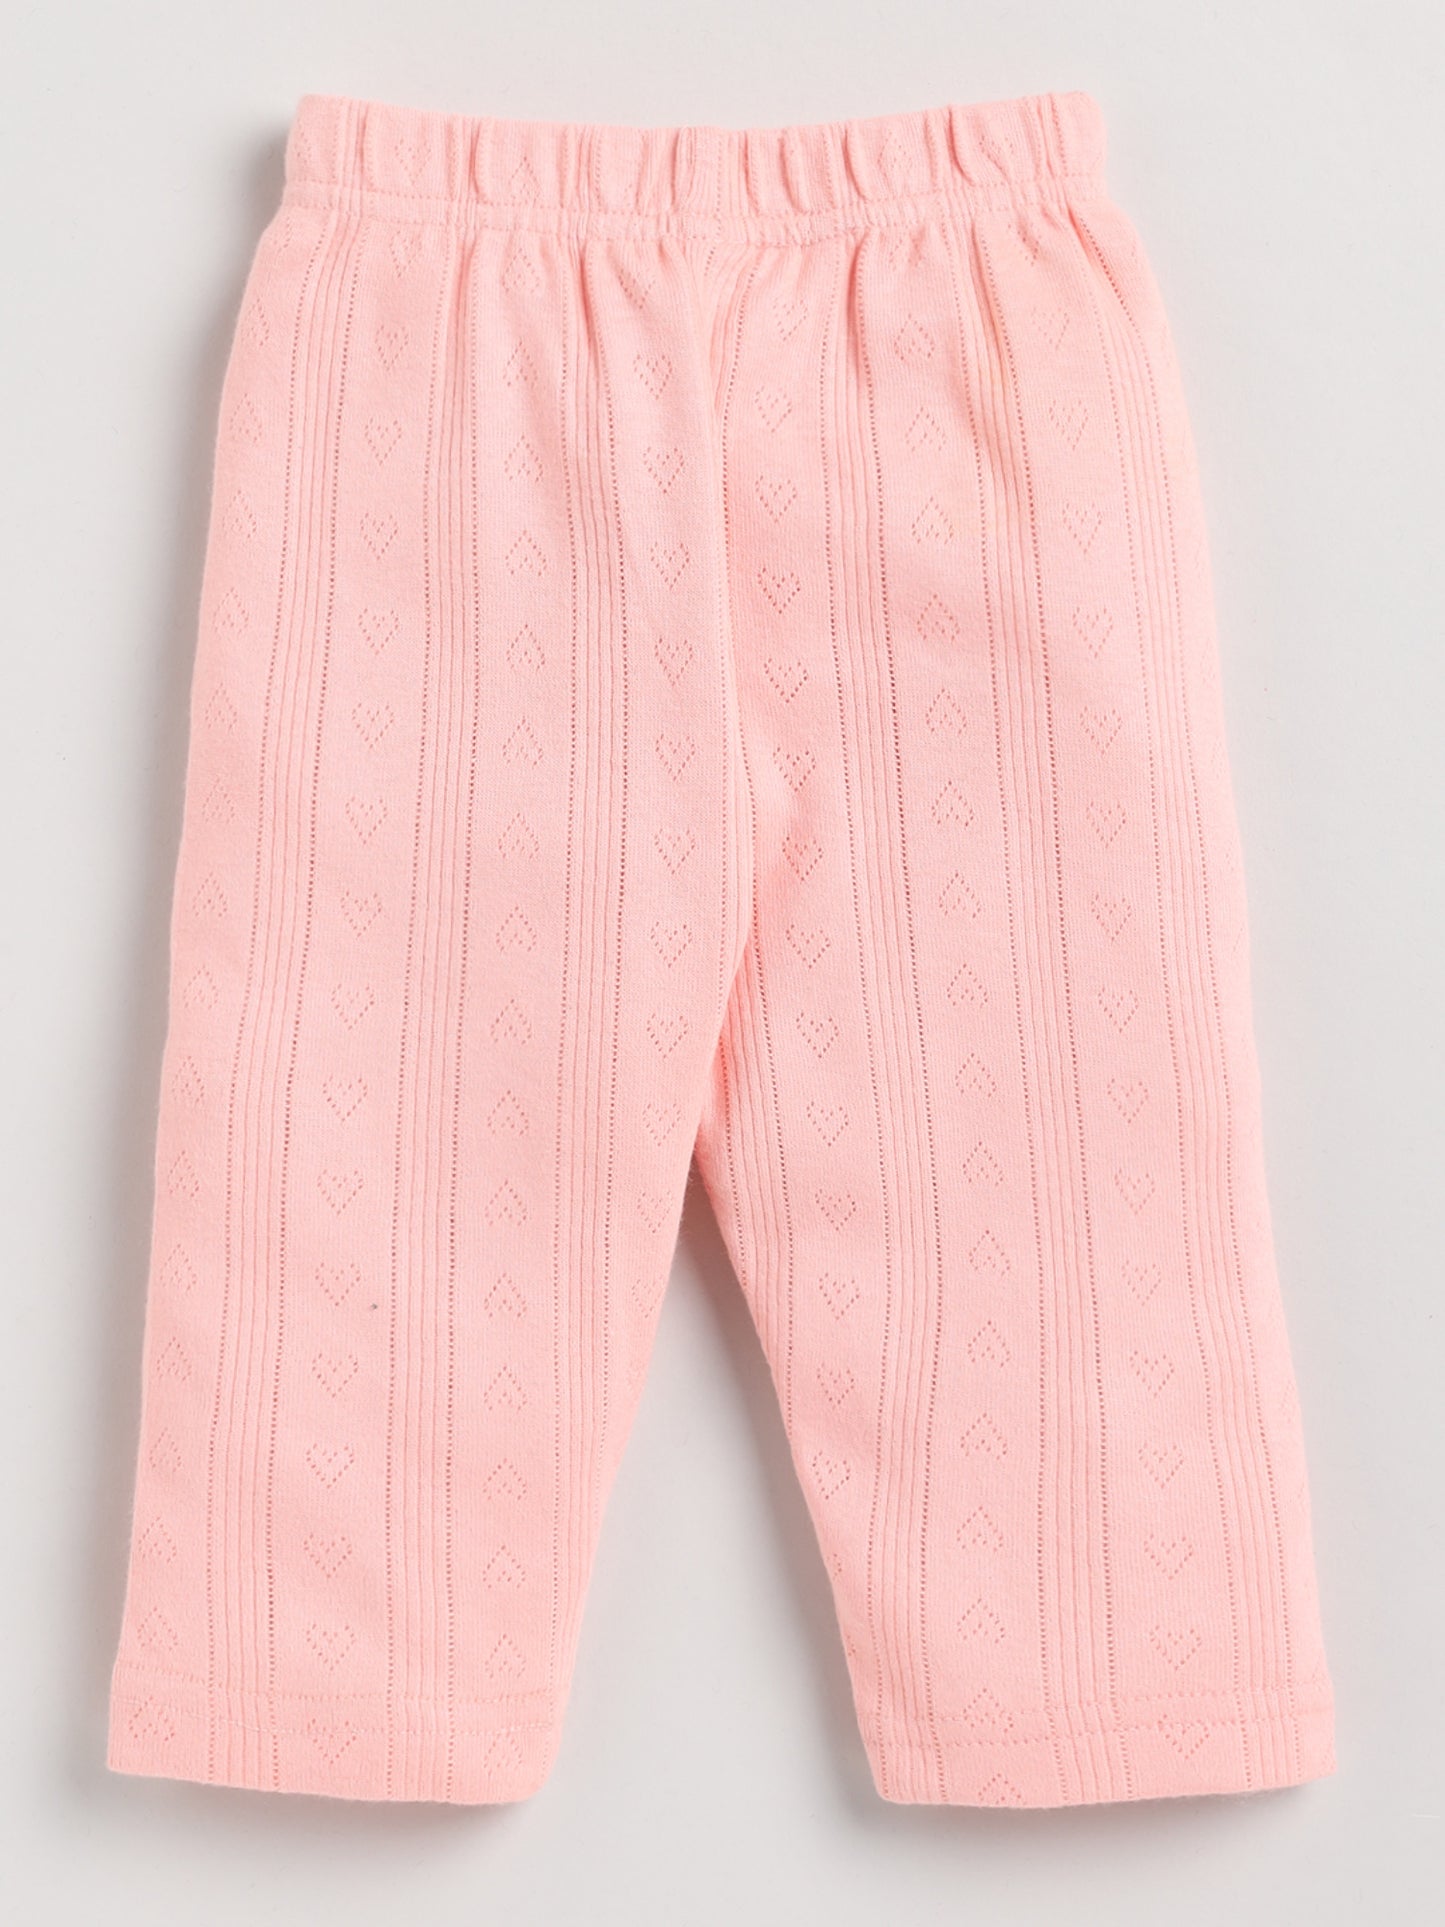 Graphic Peach Half Sleeve Cotton Nightwear Set